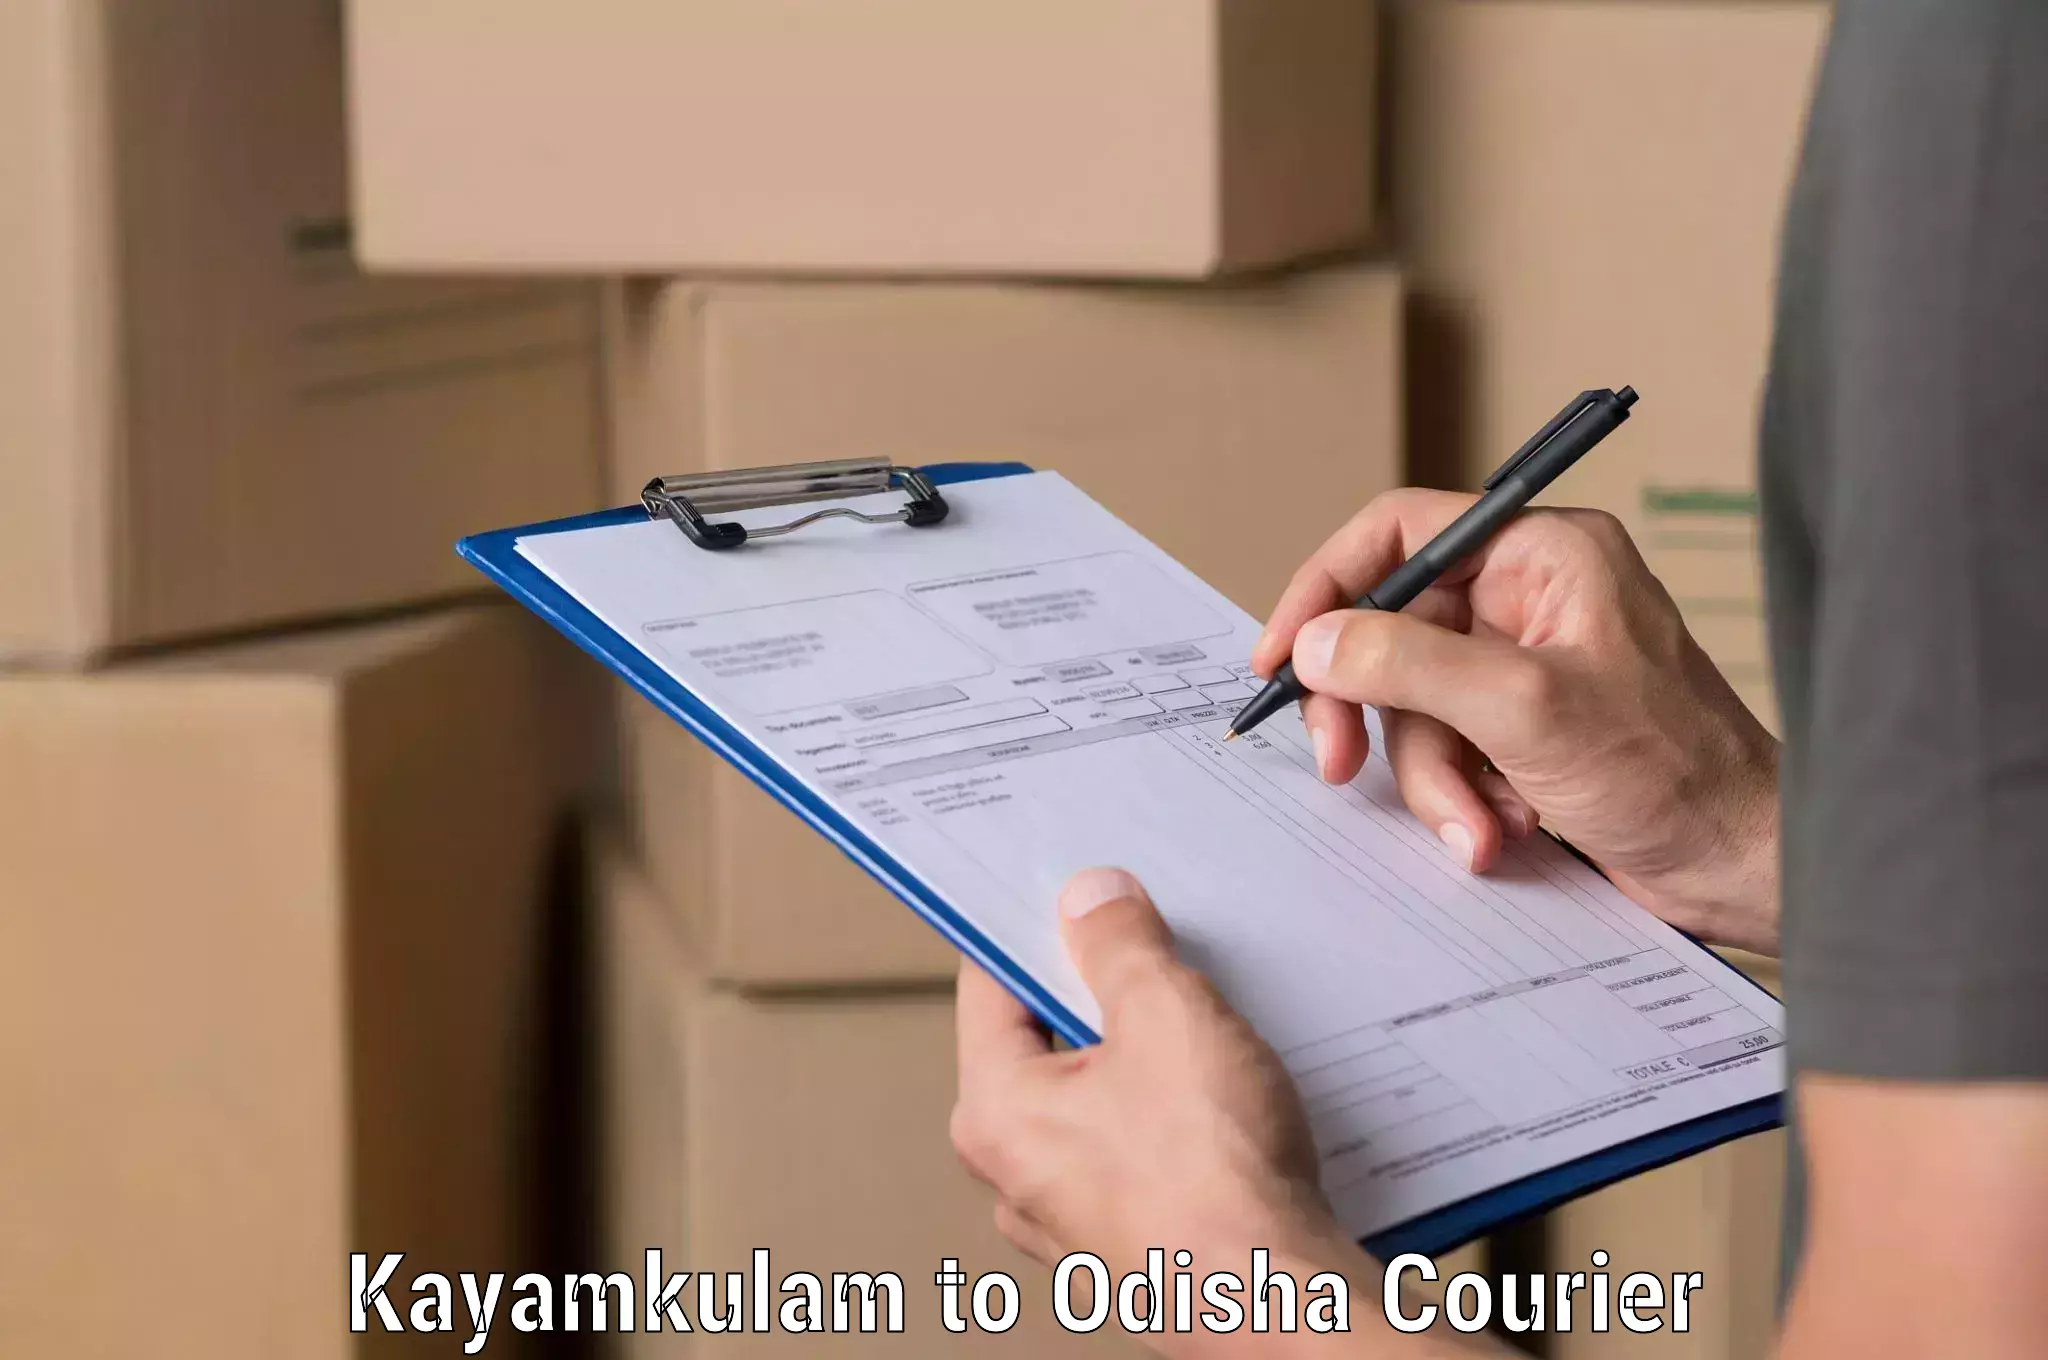 Global courier networks Kayamkulam to Mohana